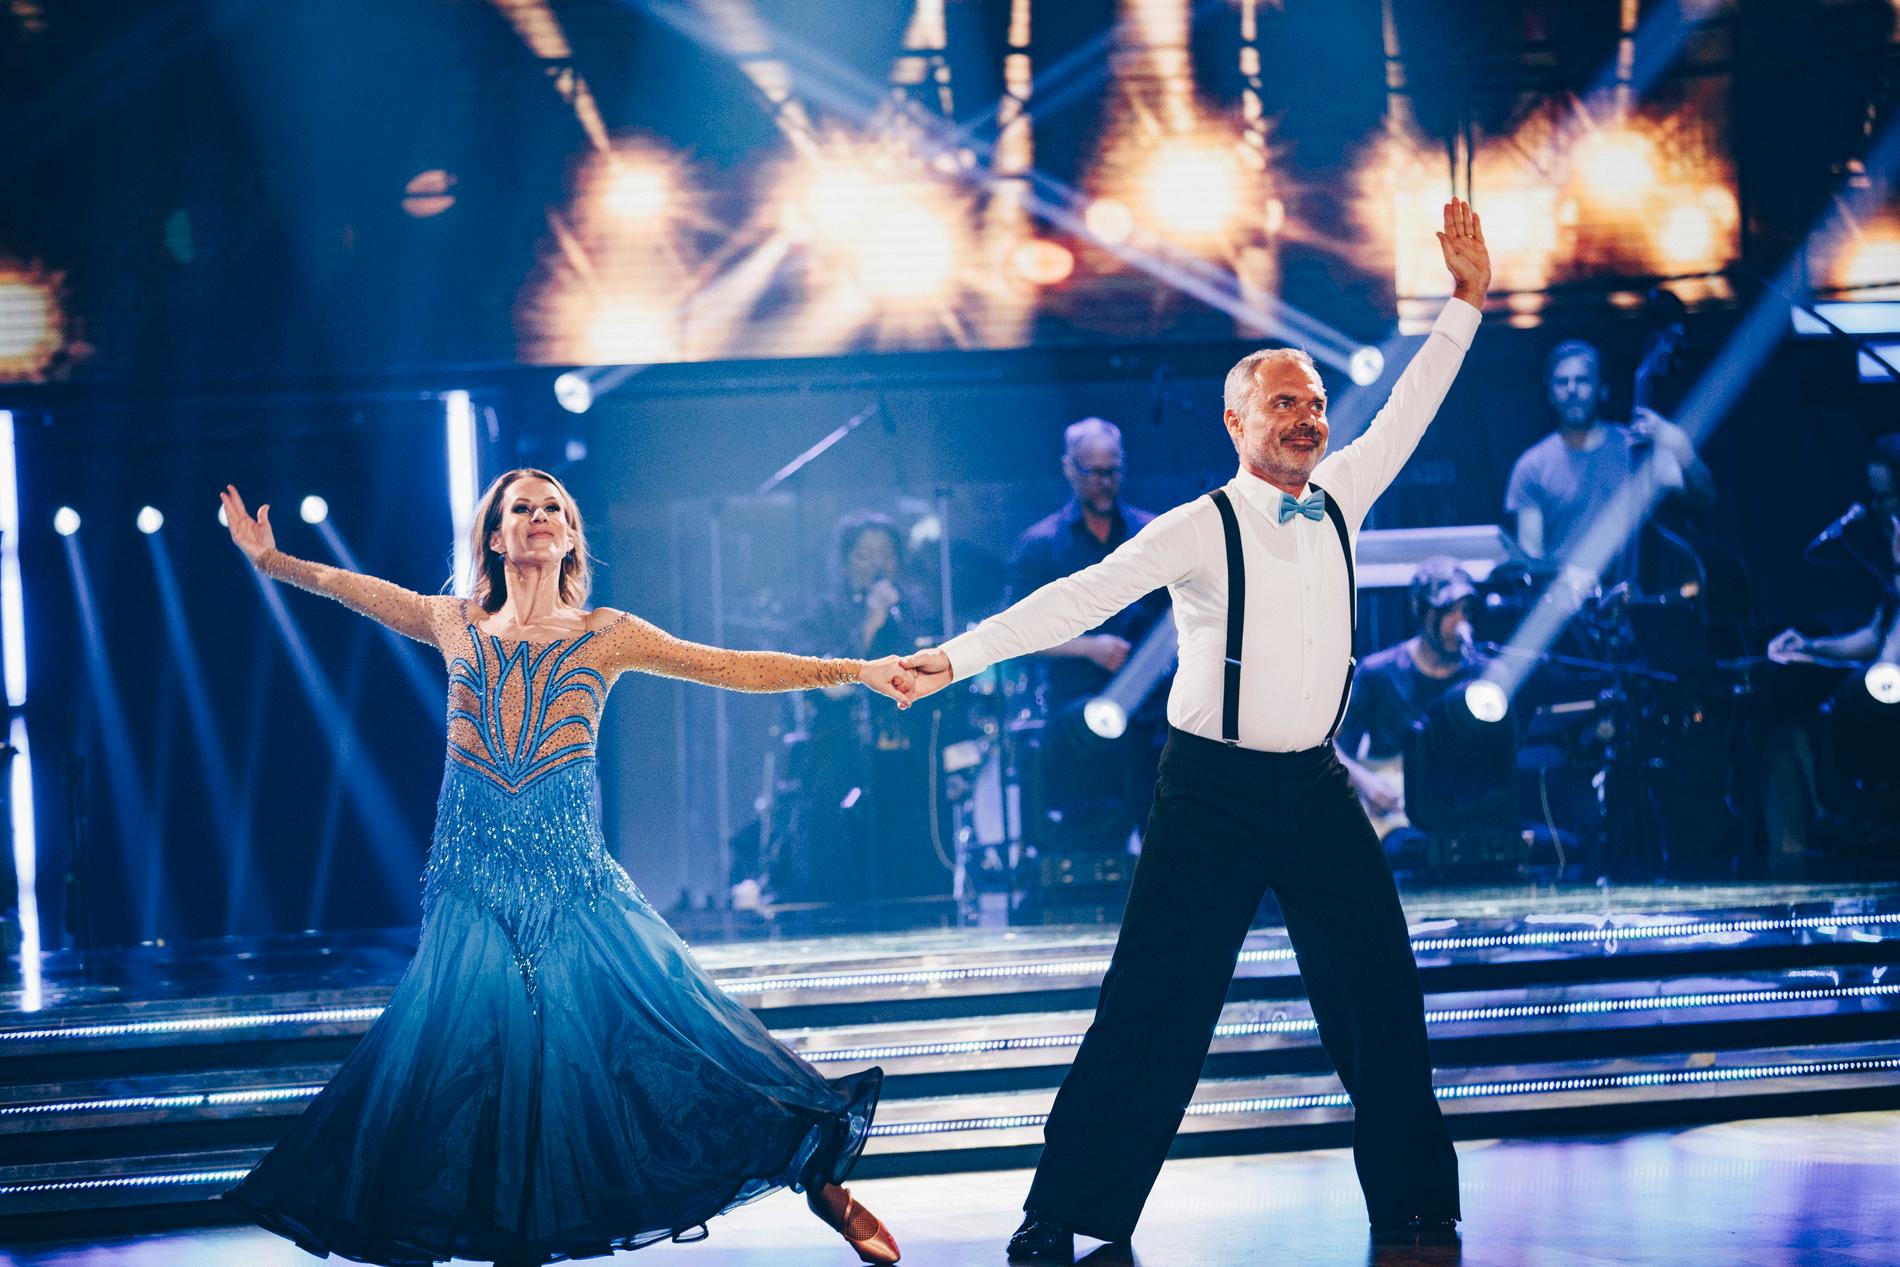 Cecilia Ehrling och Jan Björklund tävlar vidare i kvällens ”Let’s dance”.